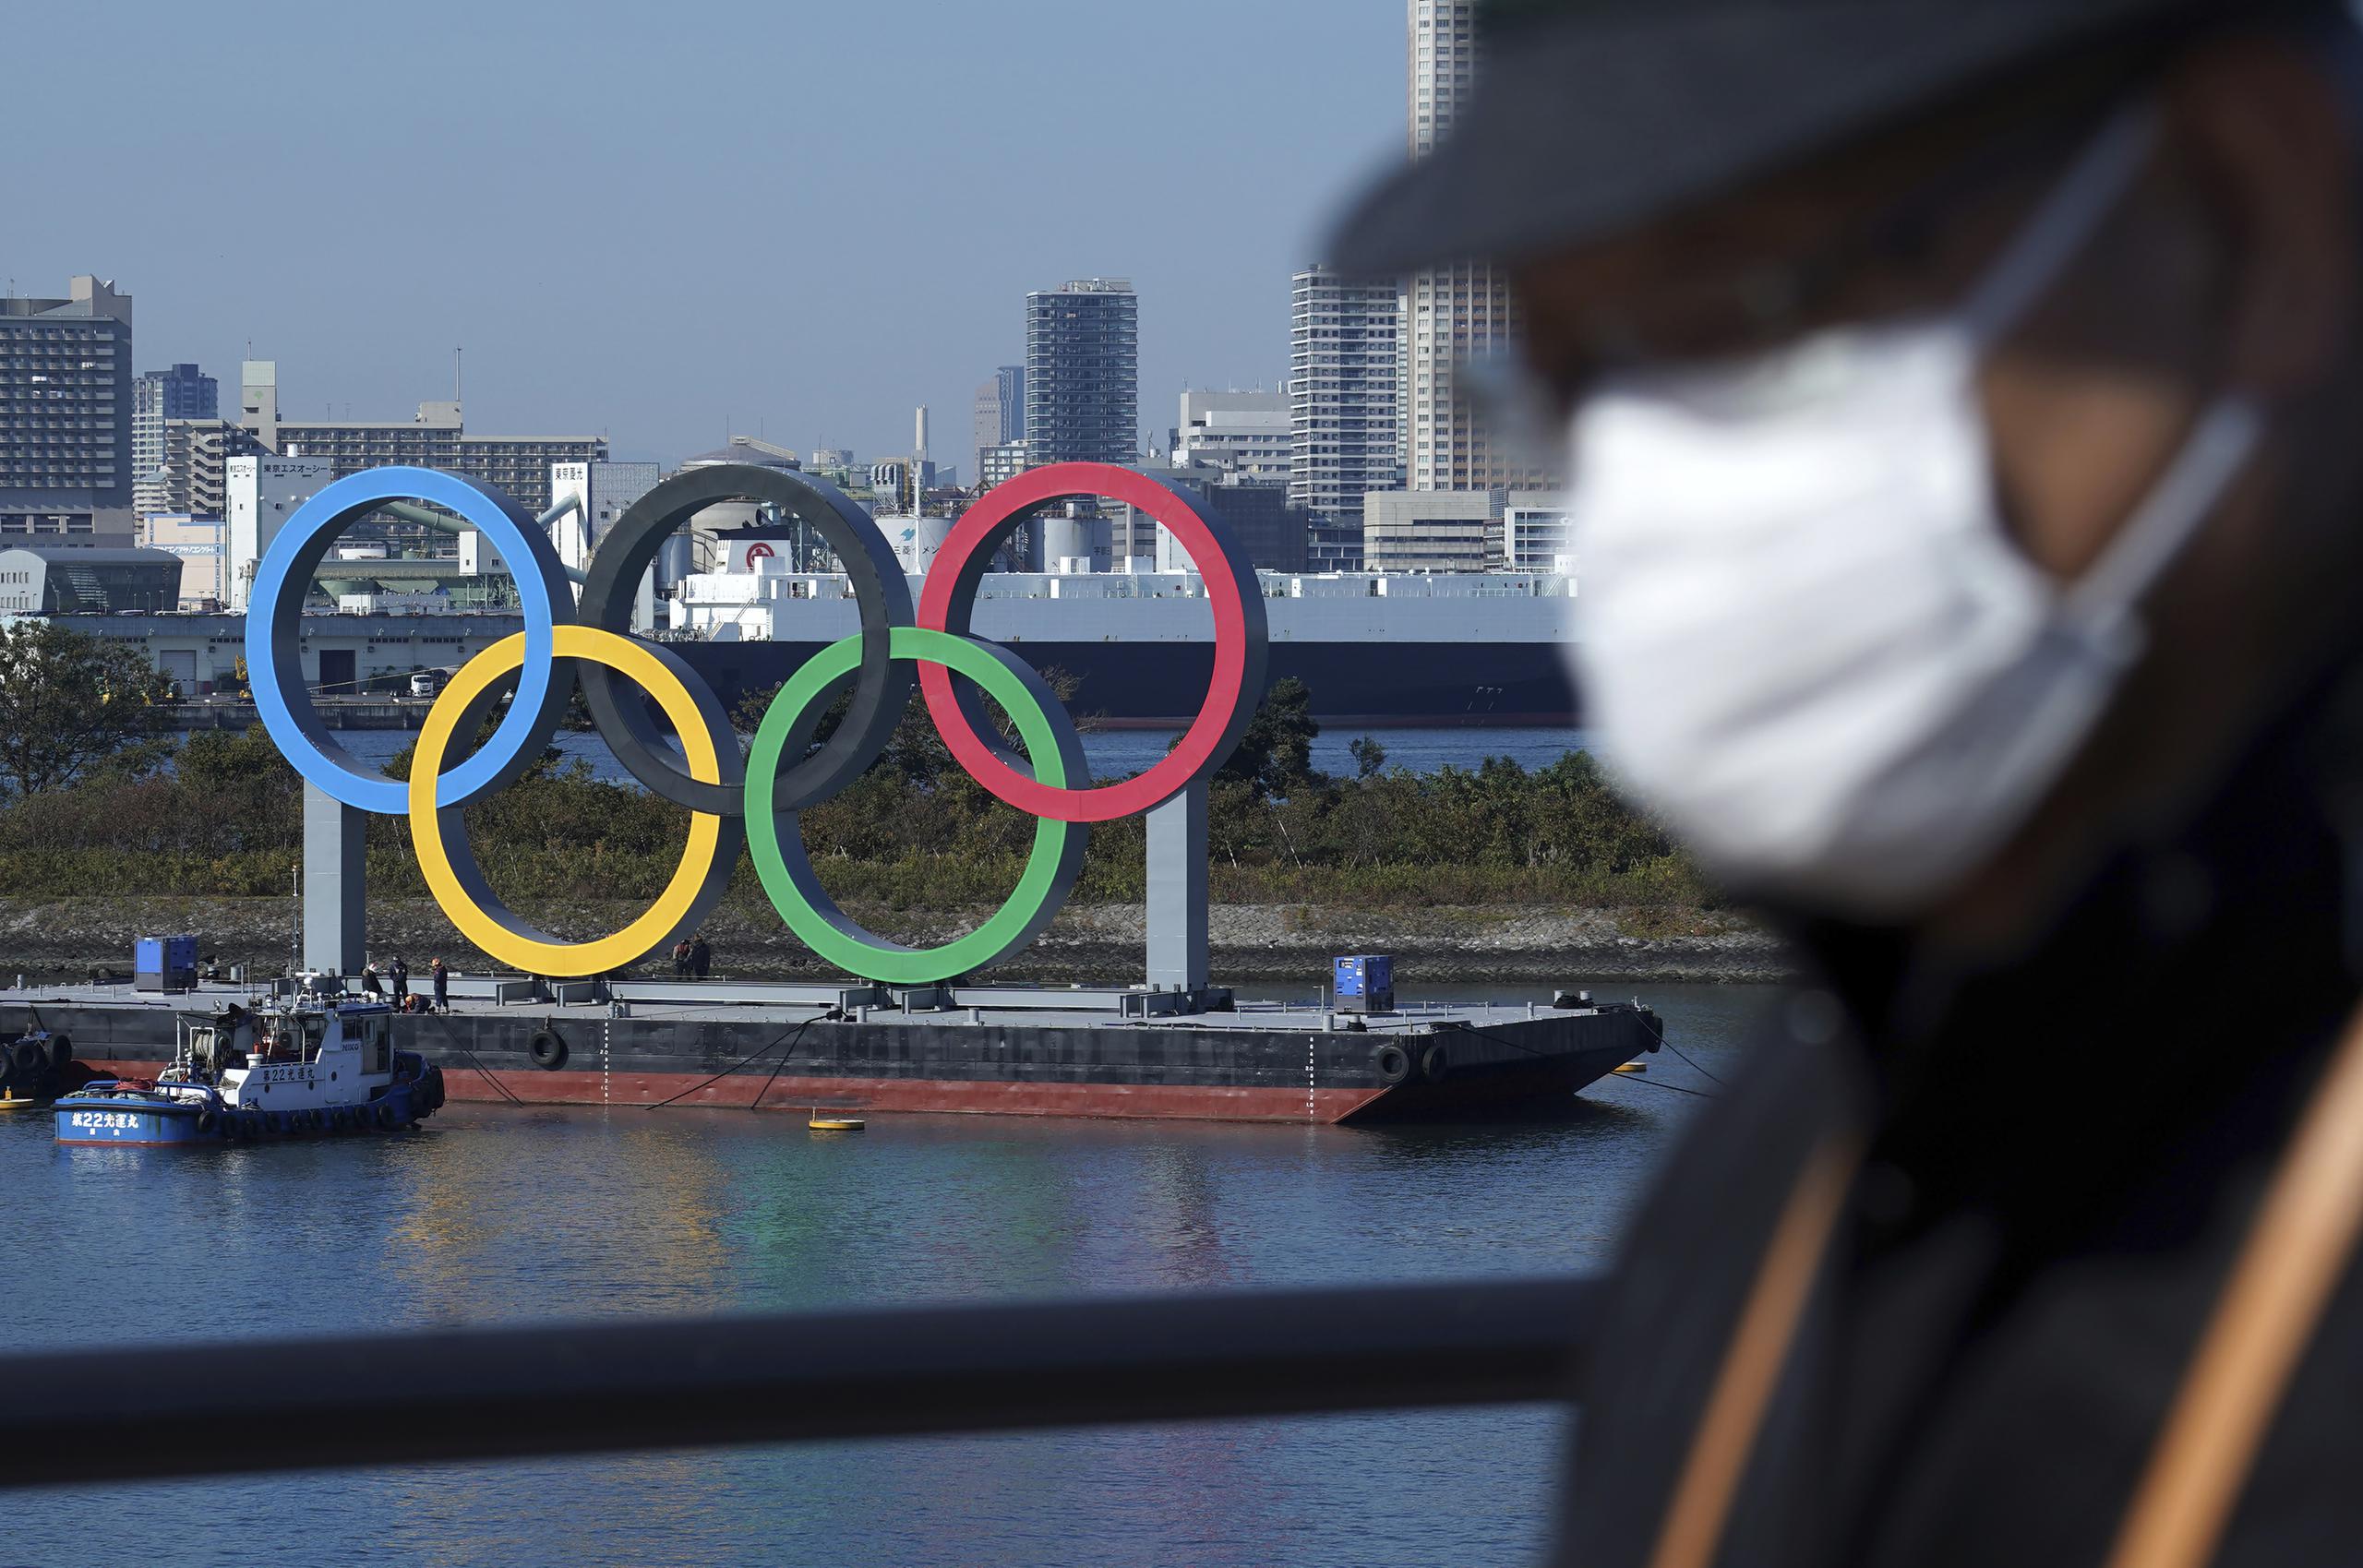 Un hombre con tapabocas pasa frente a los anillos olímpicos en Tokio. Un rebrote del coronavirus hace que surjan dudas acerca de la realización de los Juegos Olímpicos a mediados del año.